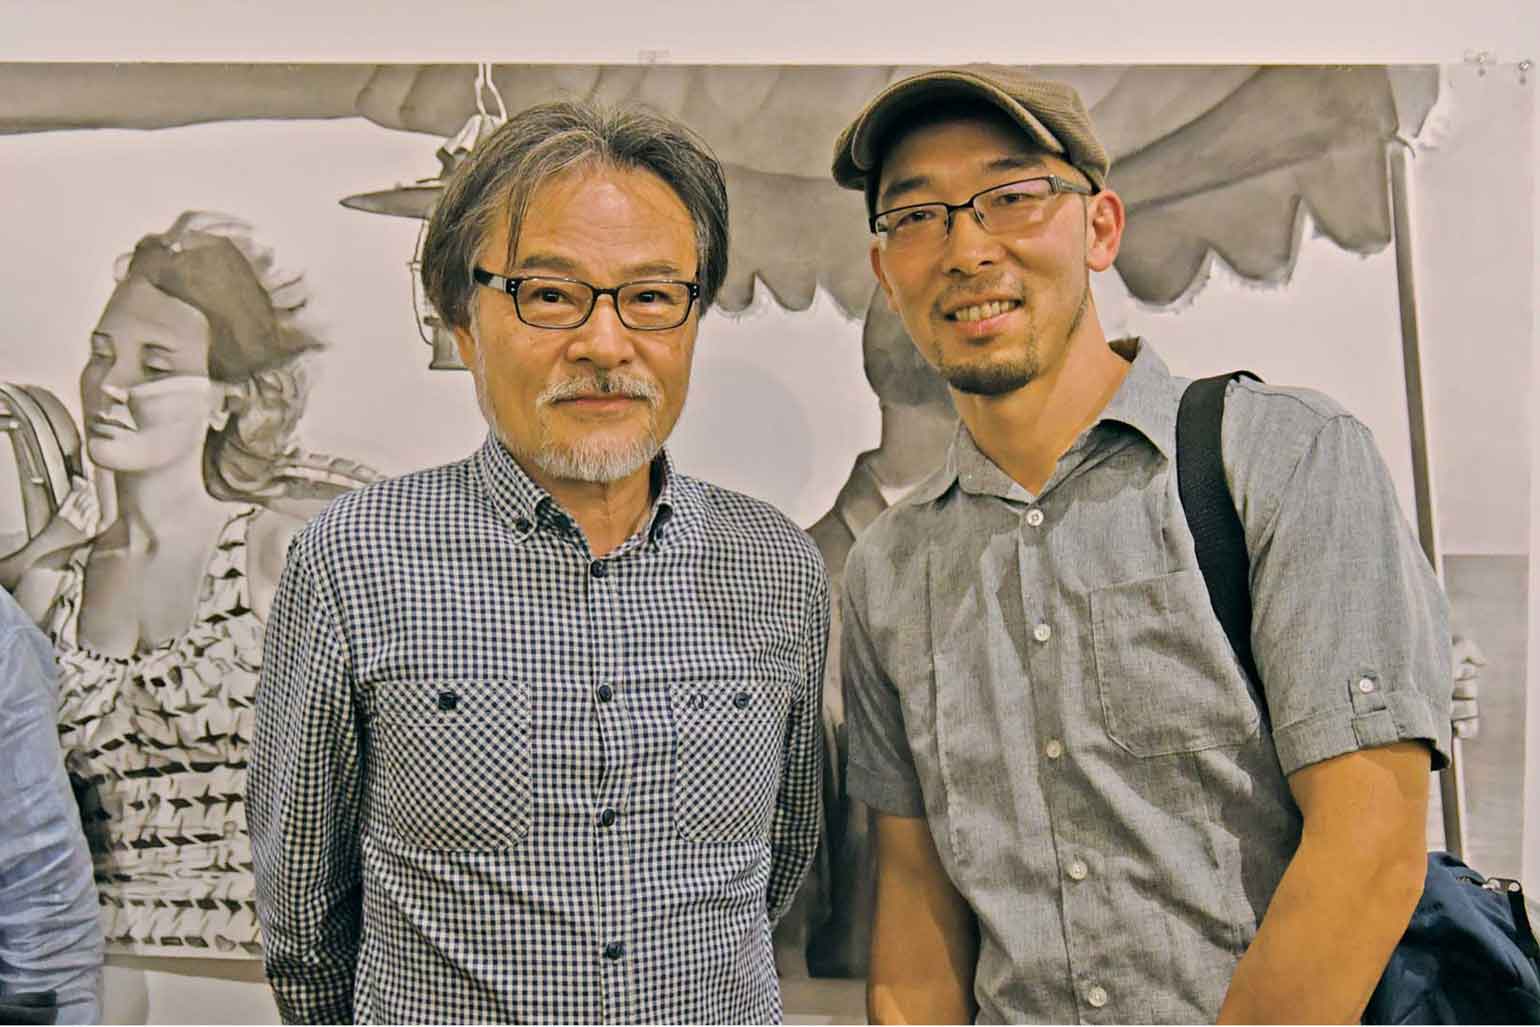 今回の黒沢監督の映画にも参加したフォーリー・アーティストの小山吾郎氏 (右)